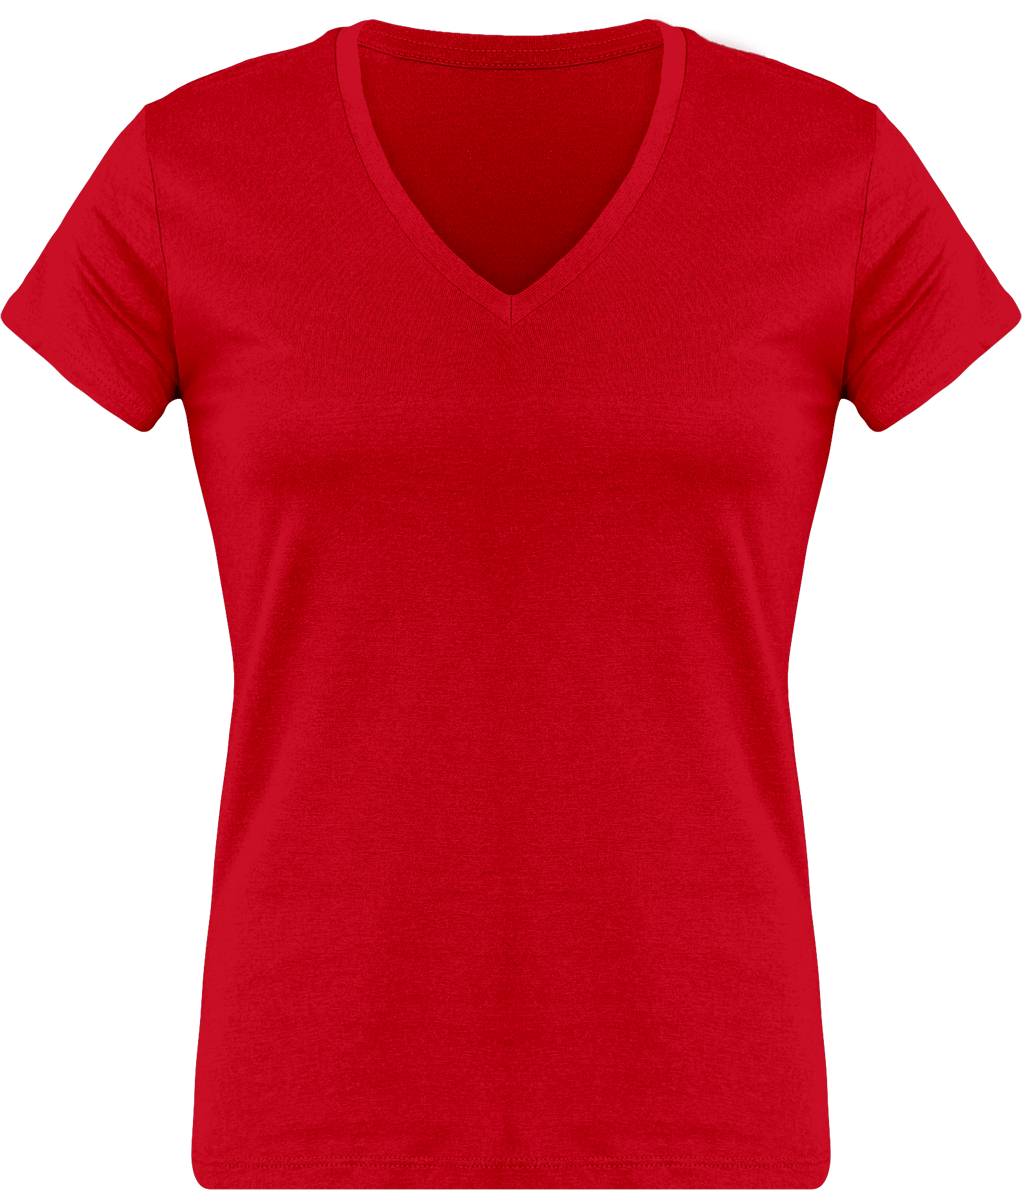 T-Shirt Femme Personnalisé, Féminin Et Confortable Avec Son Col En V Red